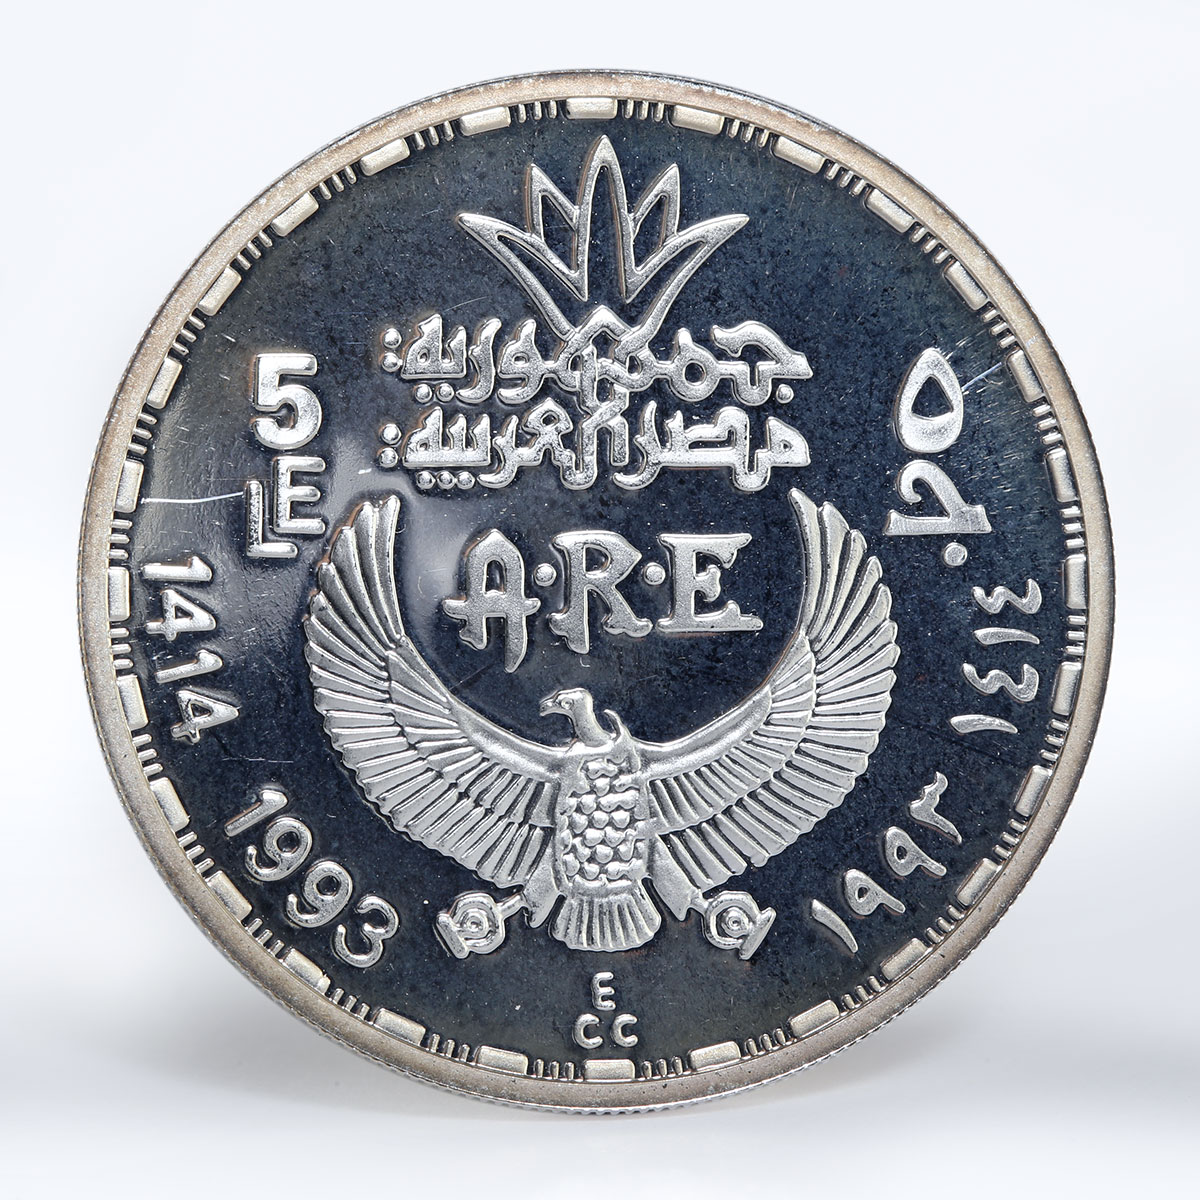 Egypt 5 pounds Guardian Goddess Serket proof silver coin 1993